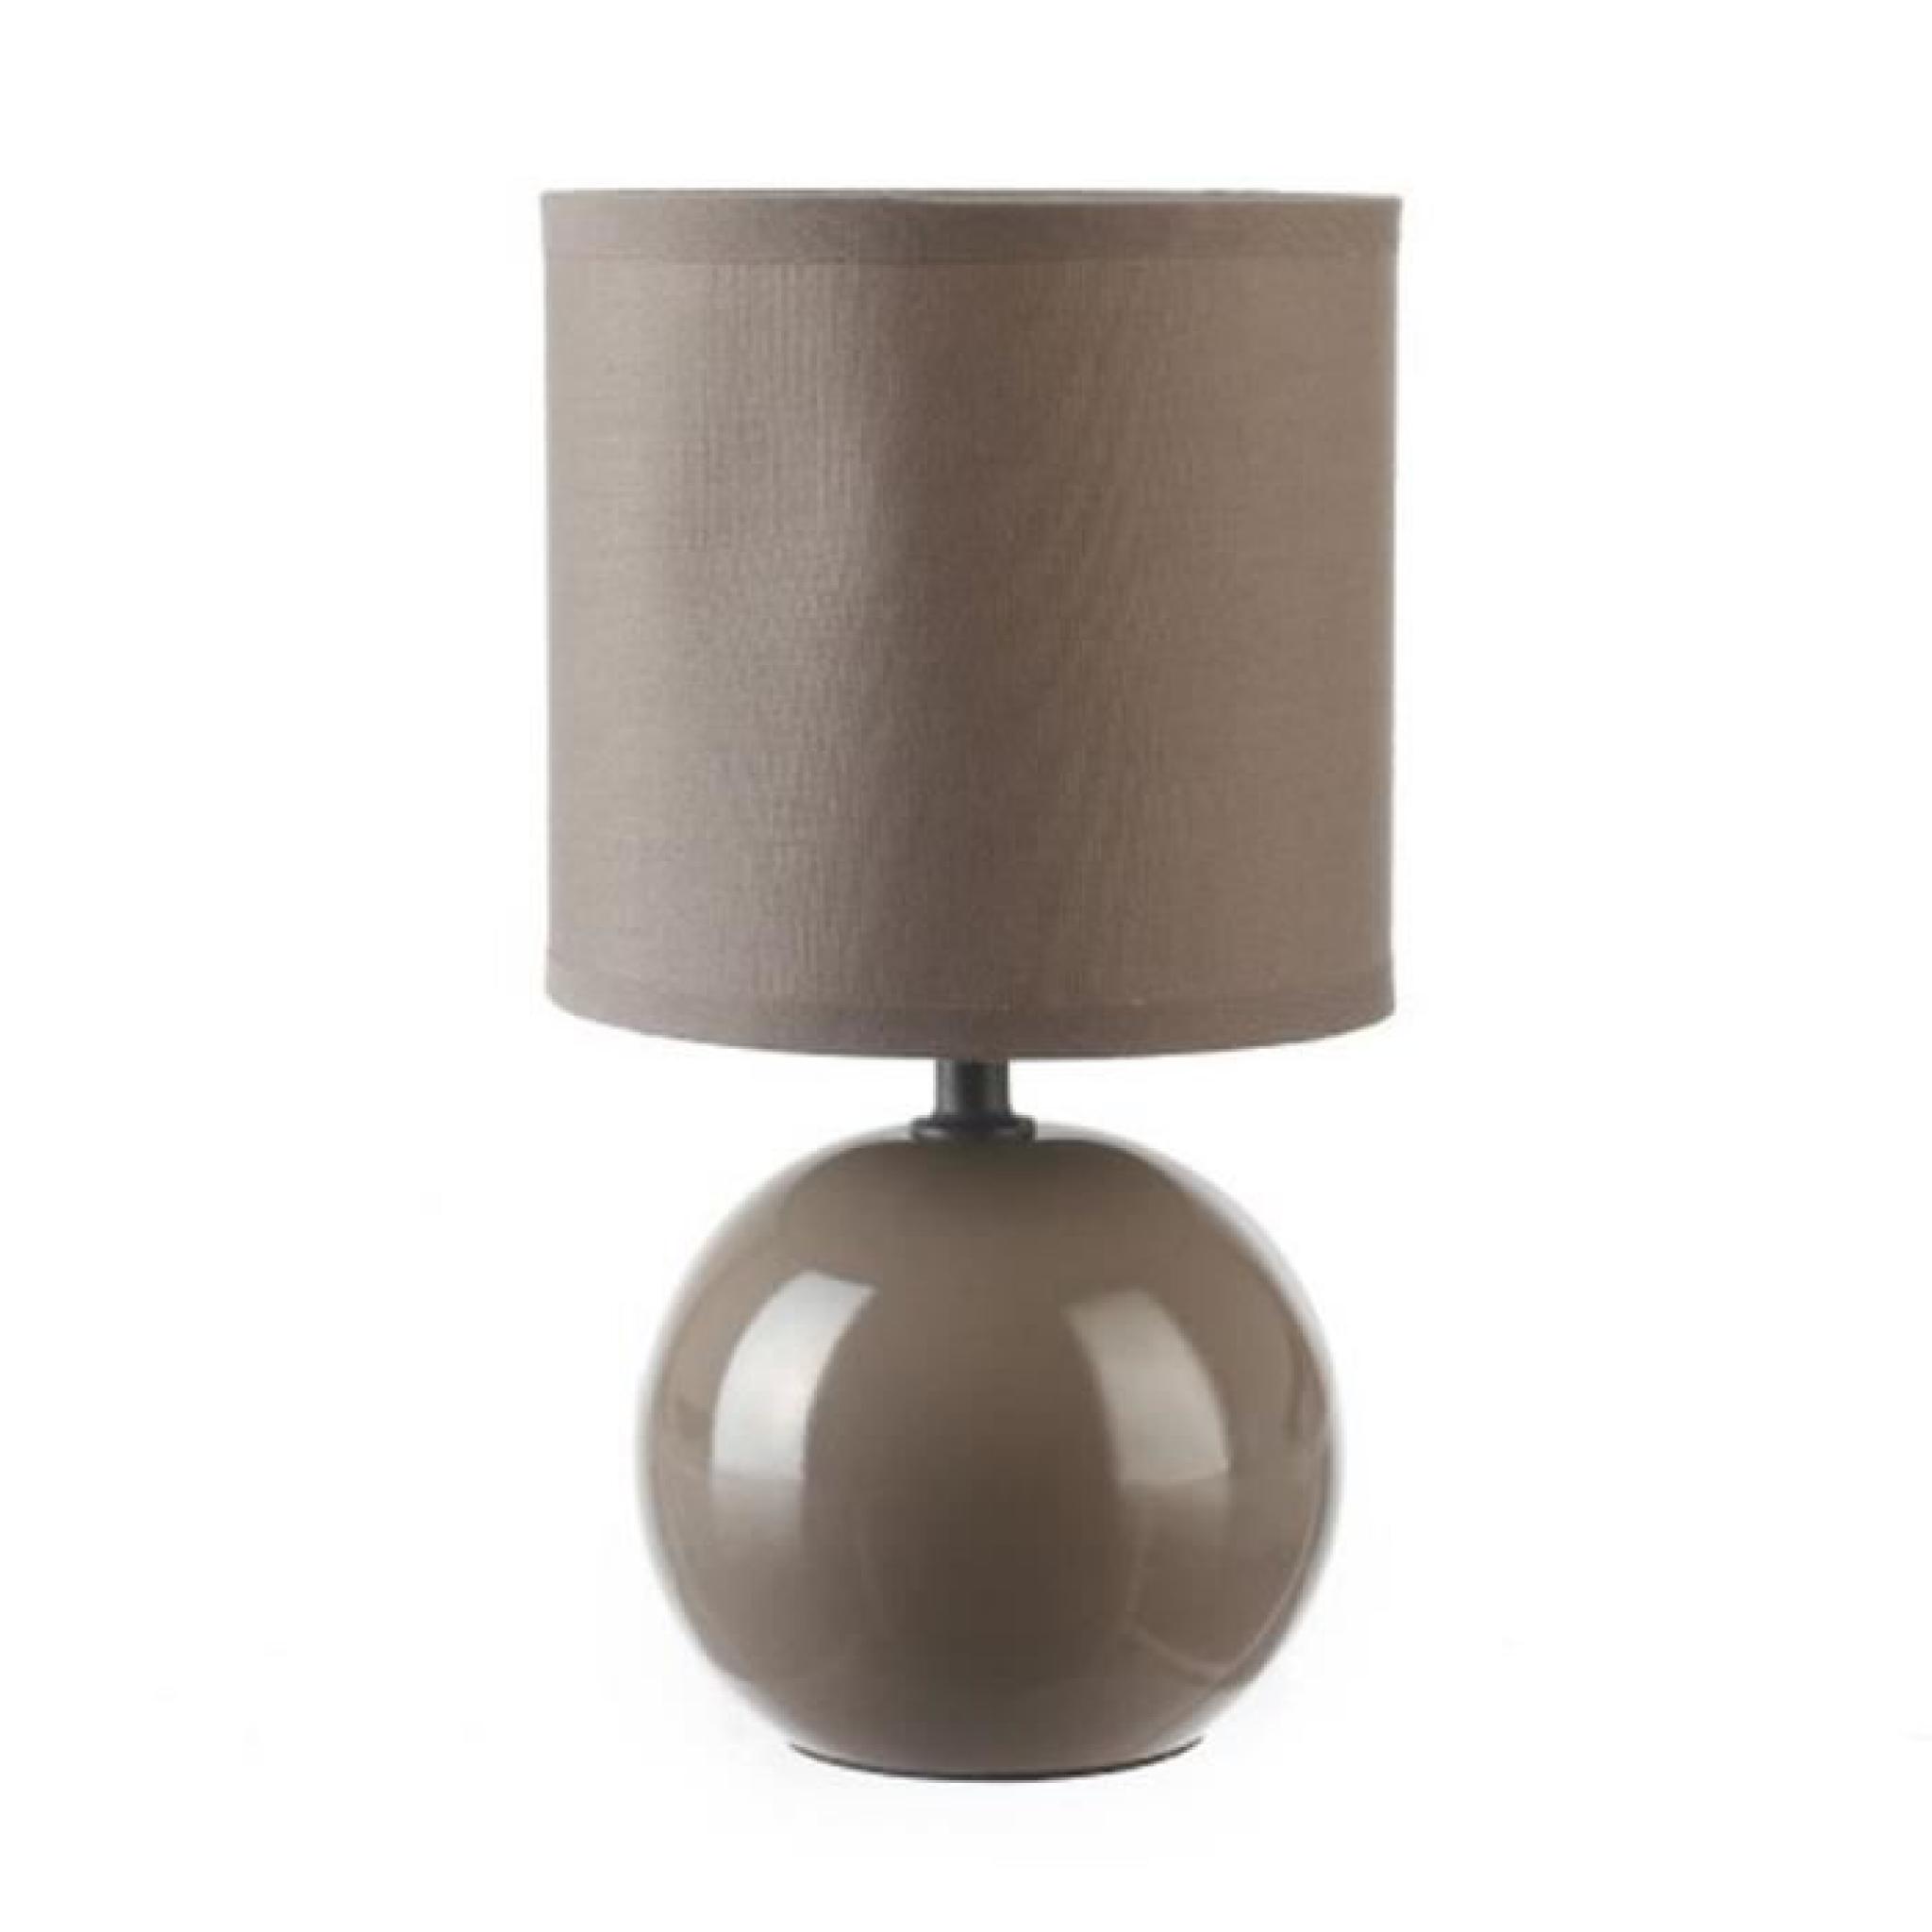 Lampe céramique boule en Taupe, Hauteur 25 cm